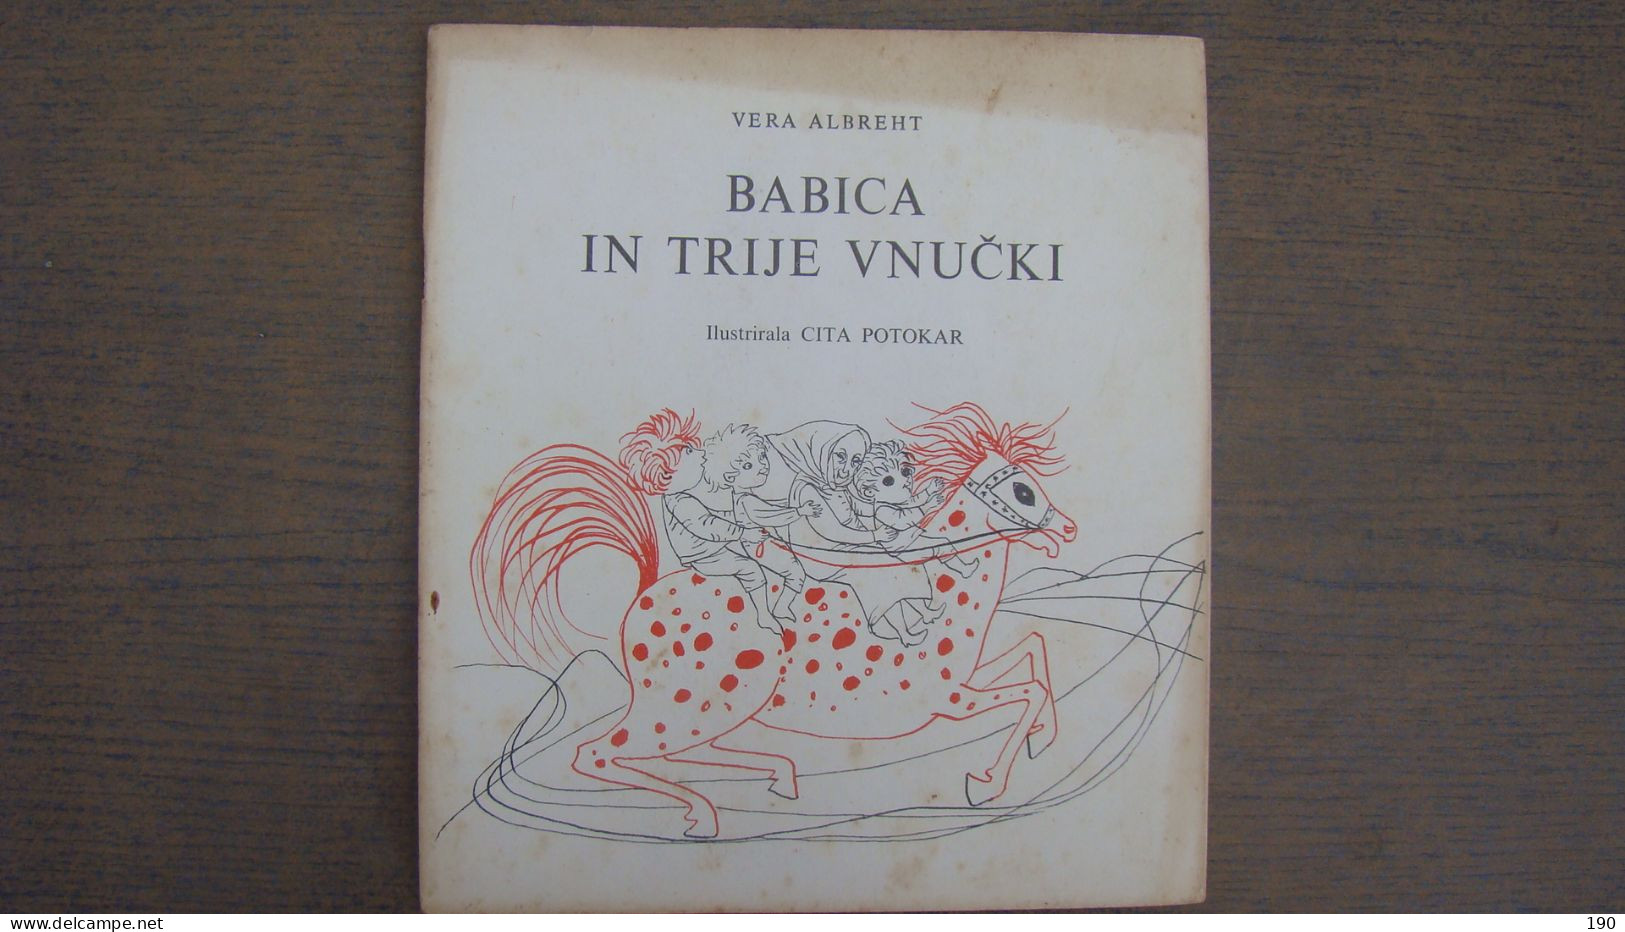 Babica In Trije Vnucki (Vera Albreht),Illustrated: Cita Potokar - Slav Languages